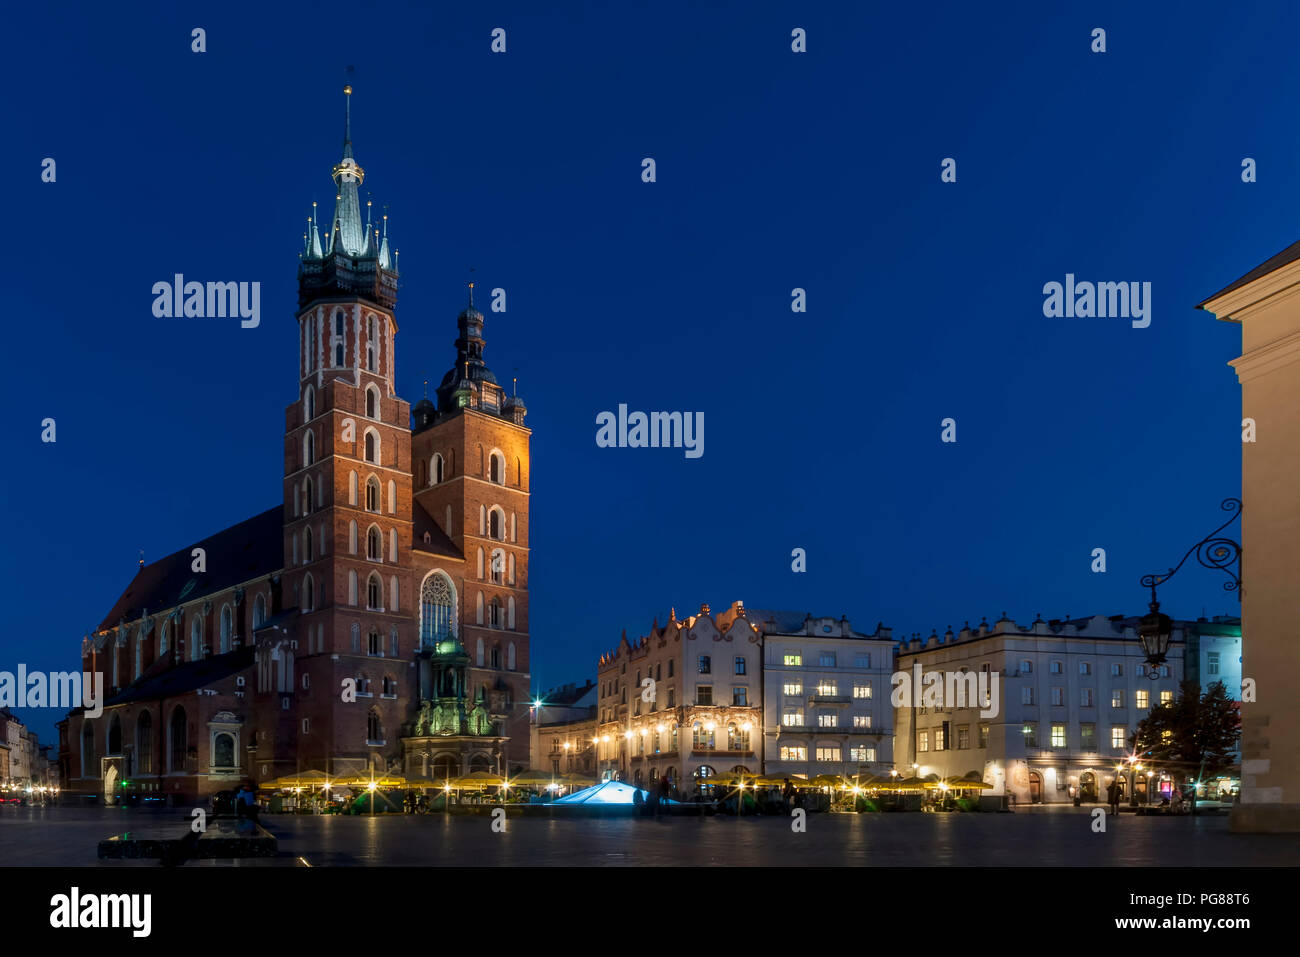 Schöner Ausblick auf den berühmten Saint Mary's Church Basilika und der Marktplatz im historischen Zentrum von Krakau, Polen, in der Blauen Stunde Licht Stockfoto